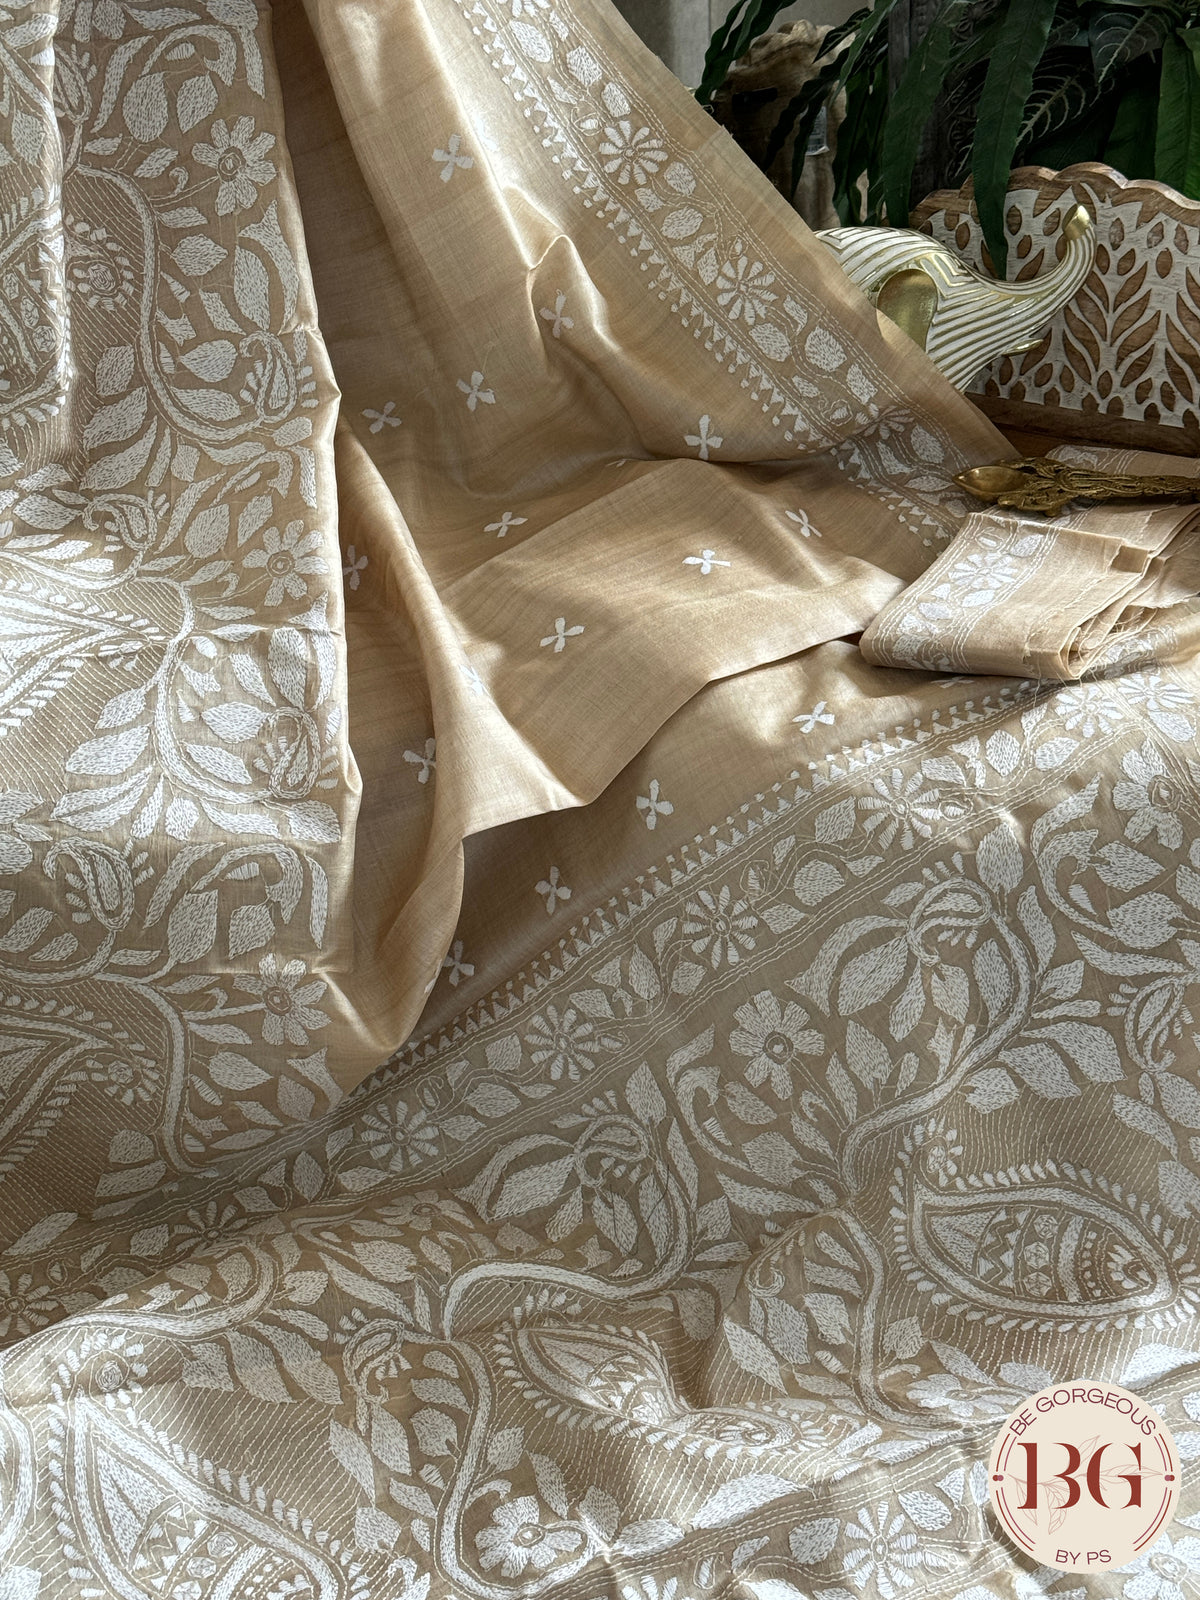 Tussar Silk Kantha Stitch Saree - Beige White Silk mark certified